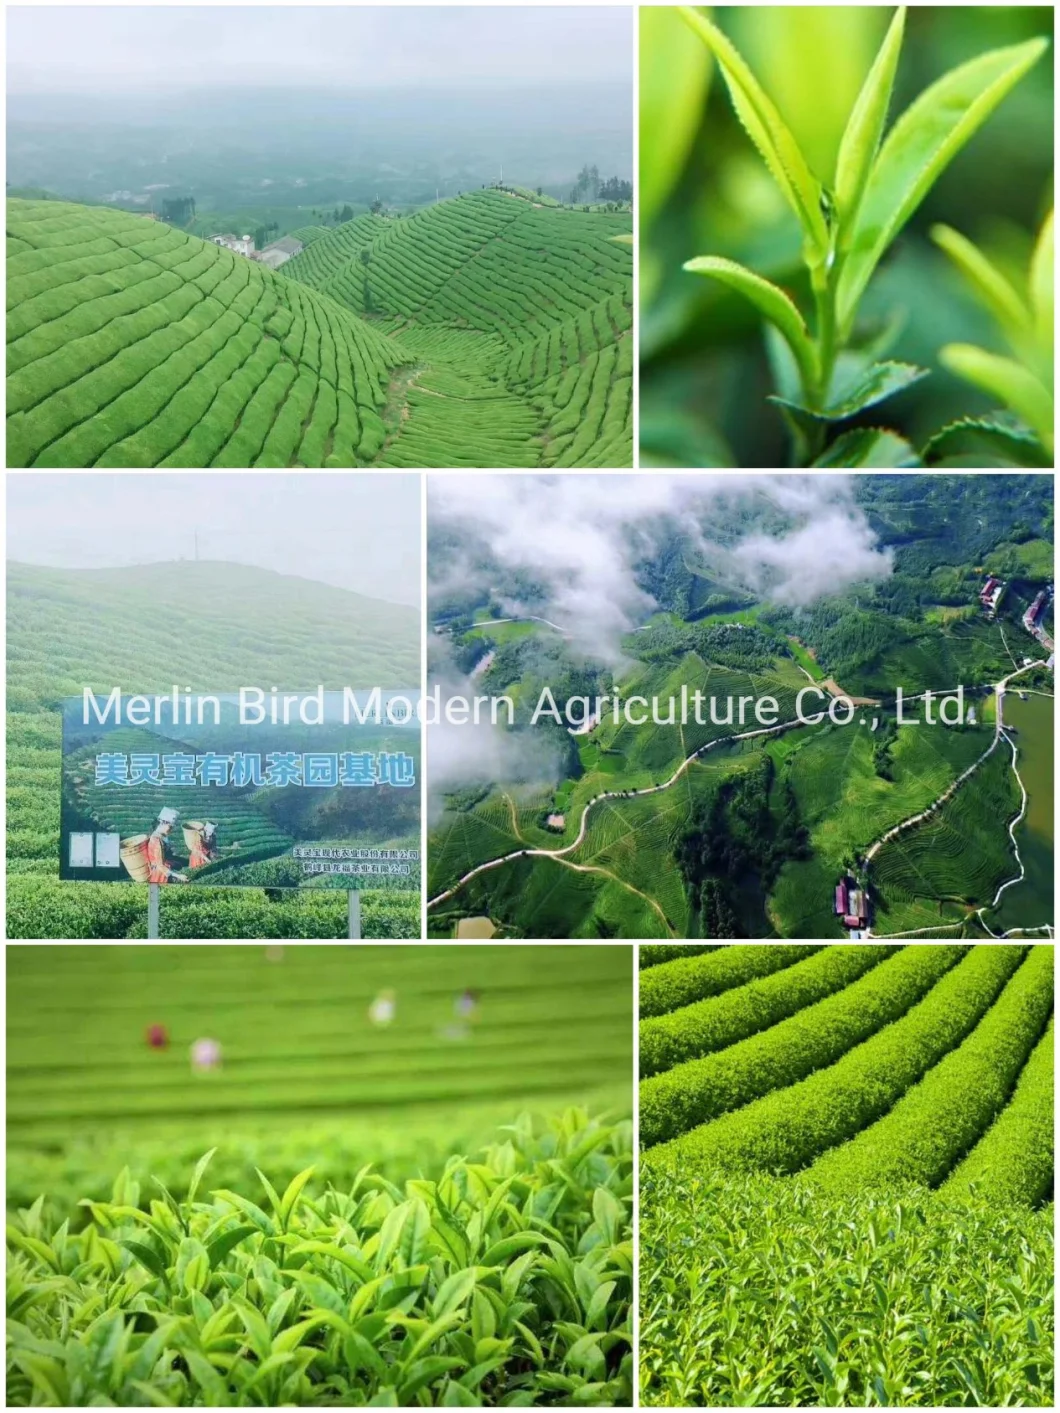 China Chunmee Green Tea 41022 Chunmee Green Tea The Vert De Chine